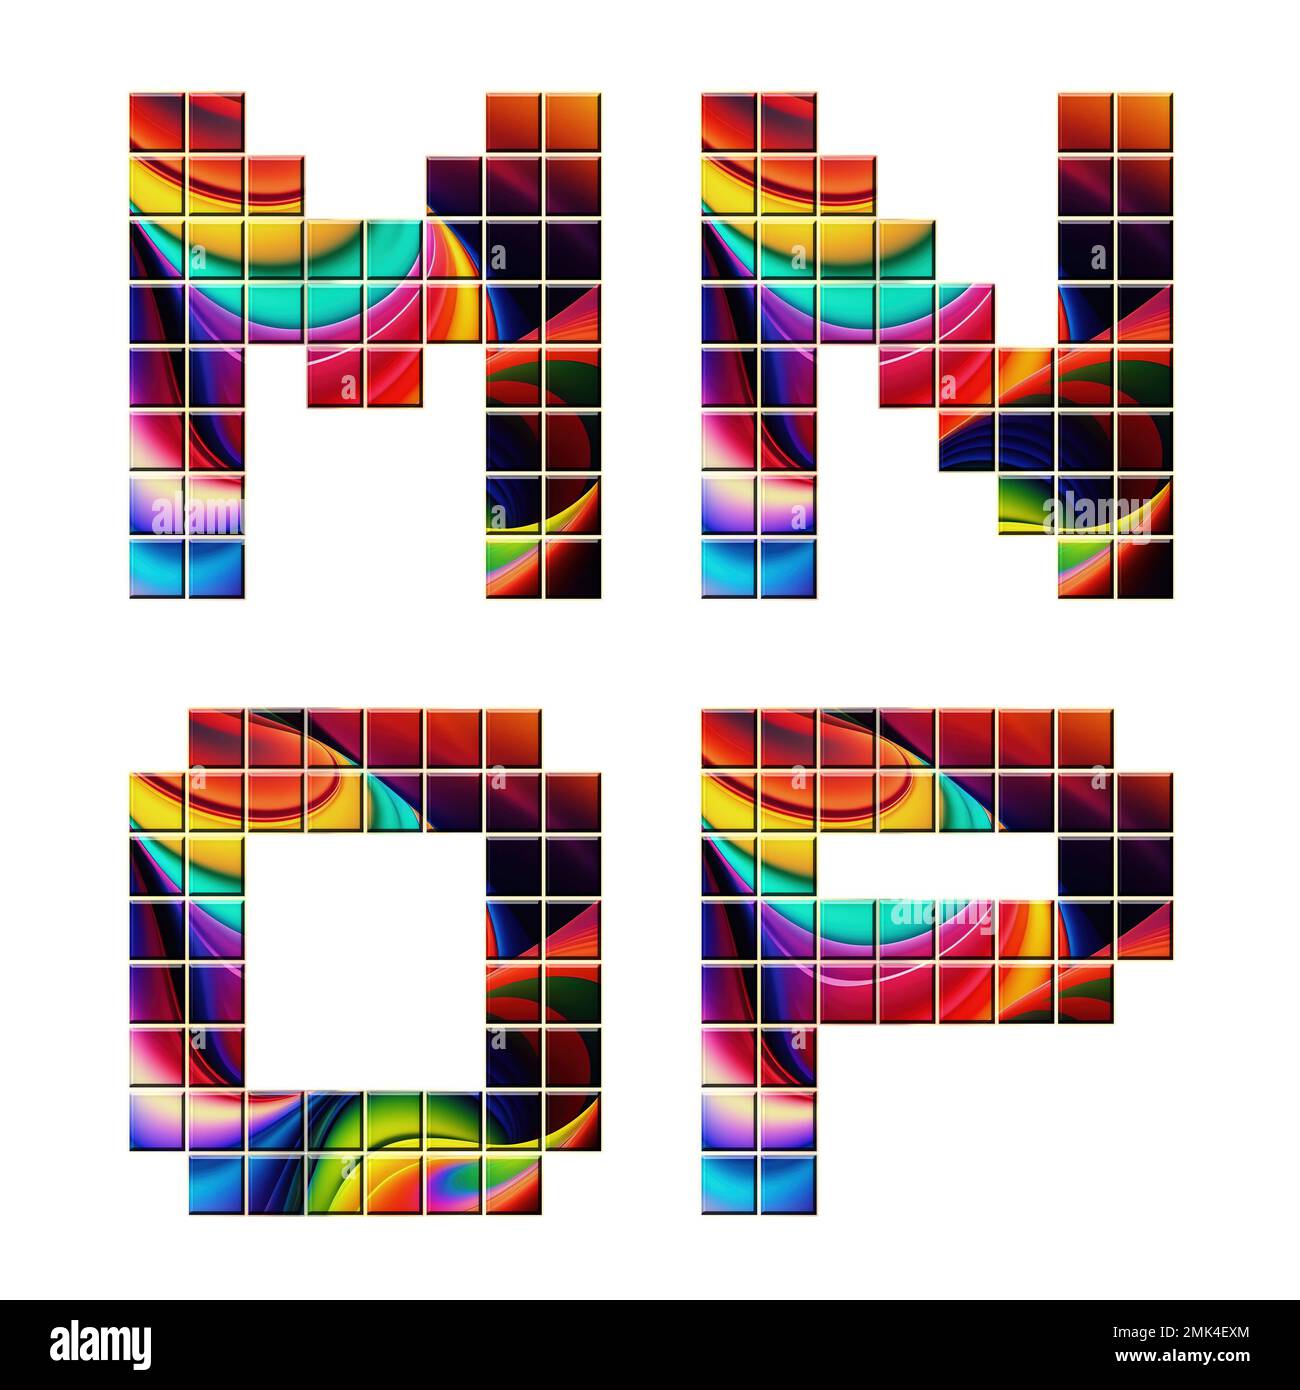 3D rendering di caratteri alfabetici a mosaico colorati - lettere M-P. Foto Stock